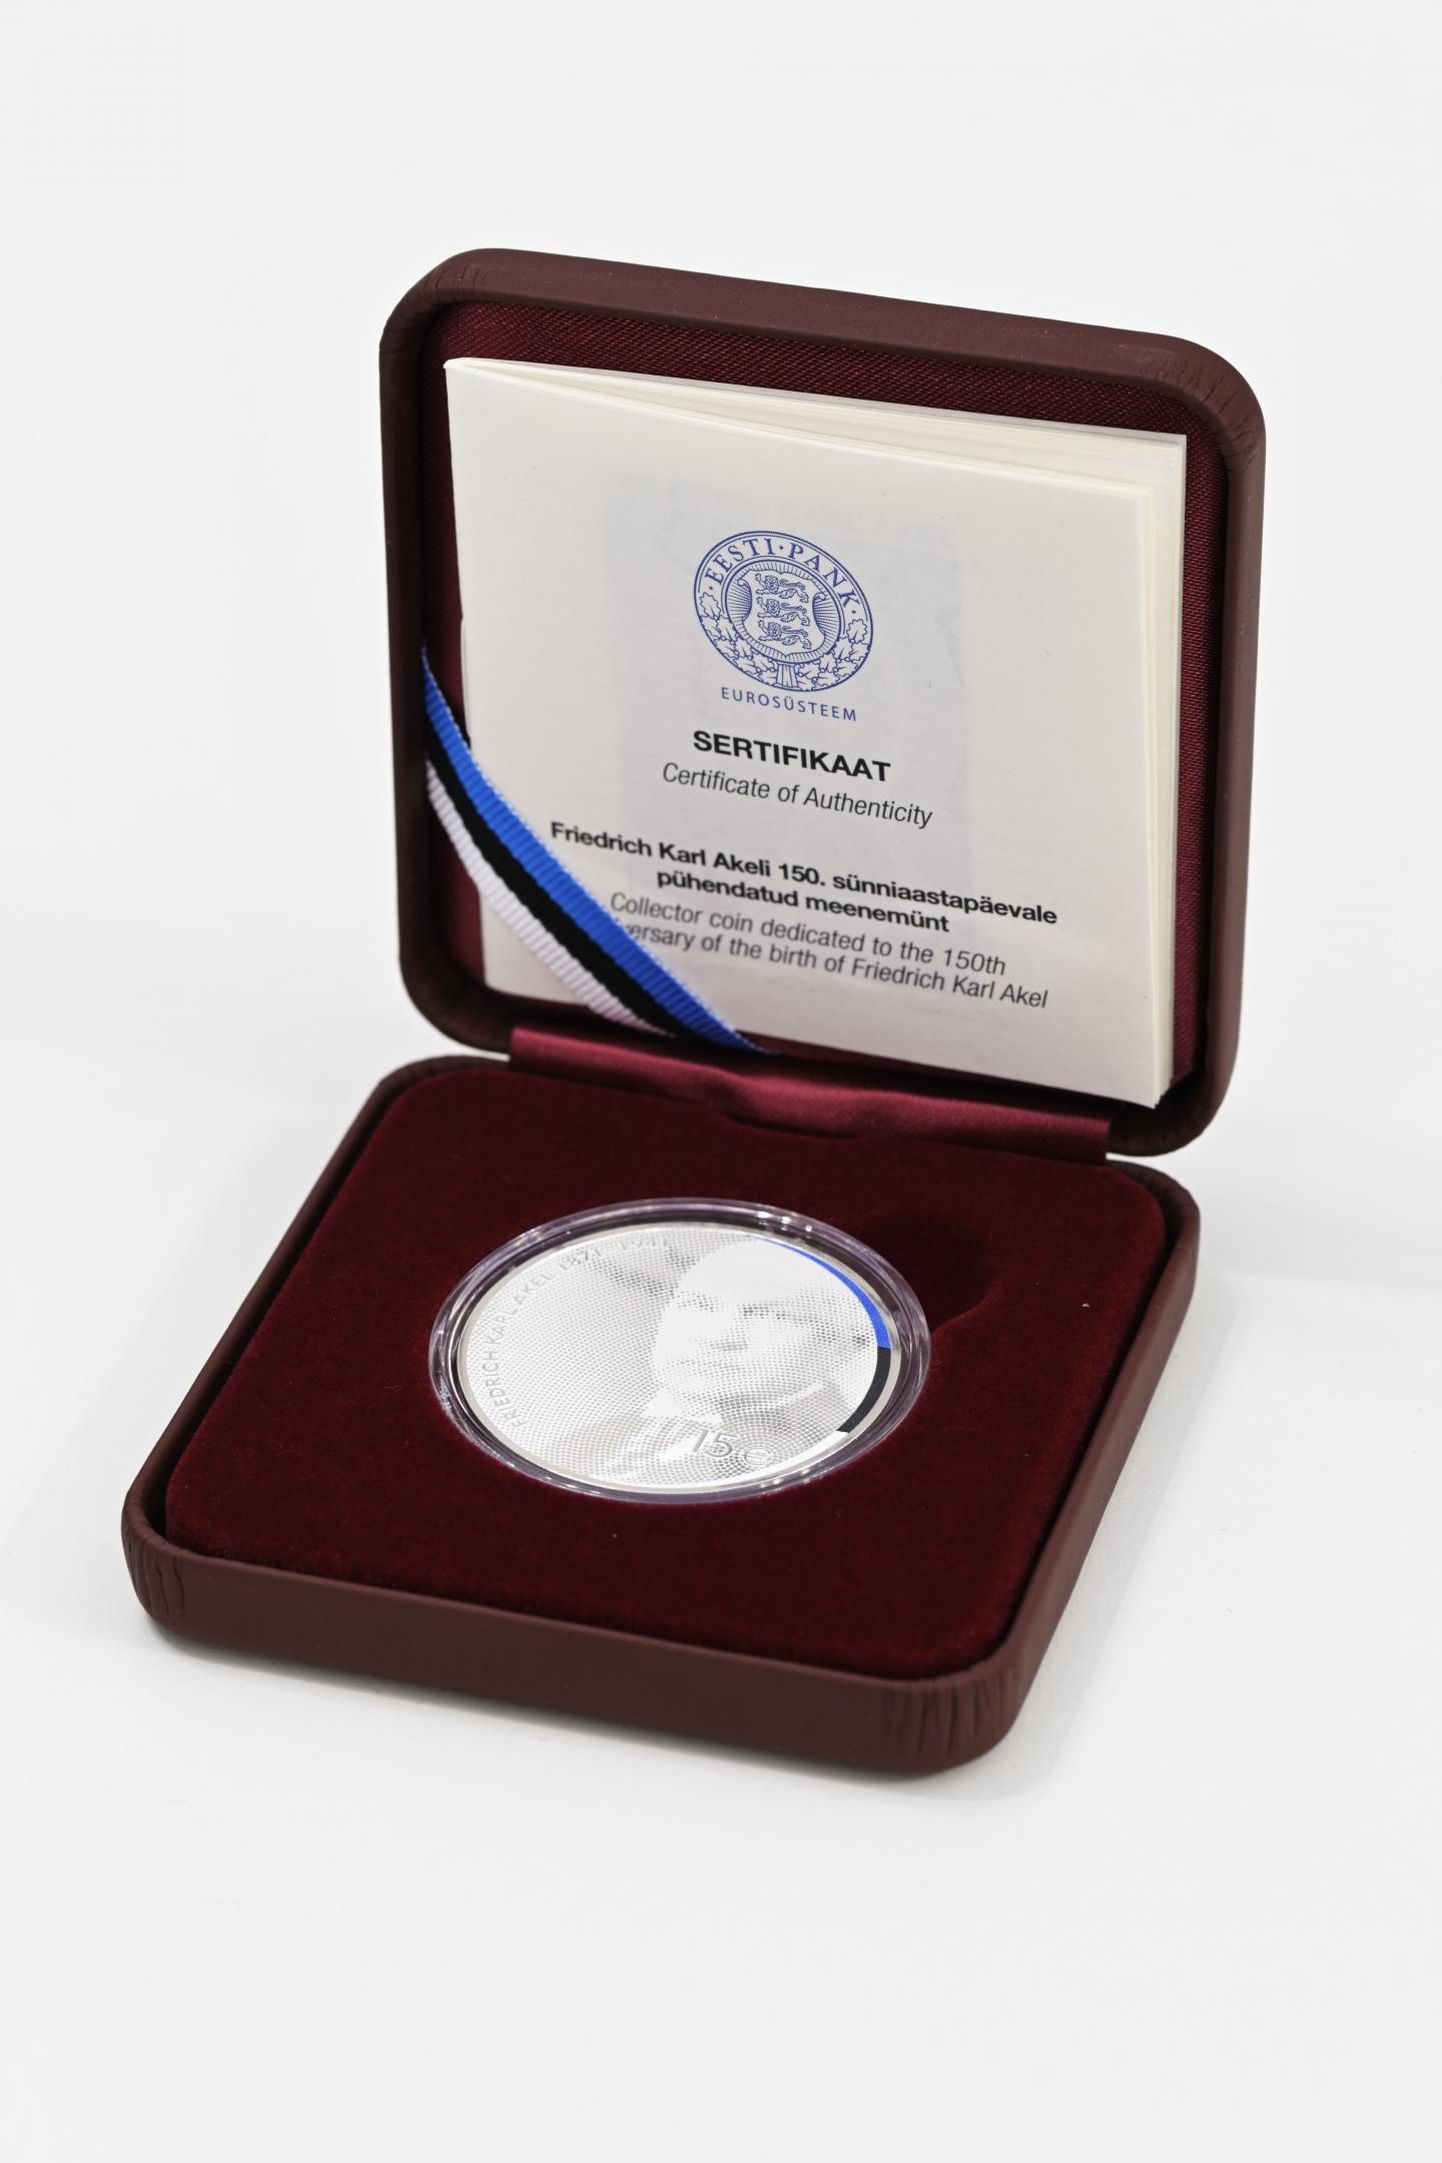 Riigivanem F. K Akelile pühendatud meenemünti müüakse ainult Omniva e-poes. Kuna koroonaleviku risk on kõrge, siis postkontorid ja Eesti Panga muuseumipood meenemünti ei müü.